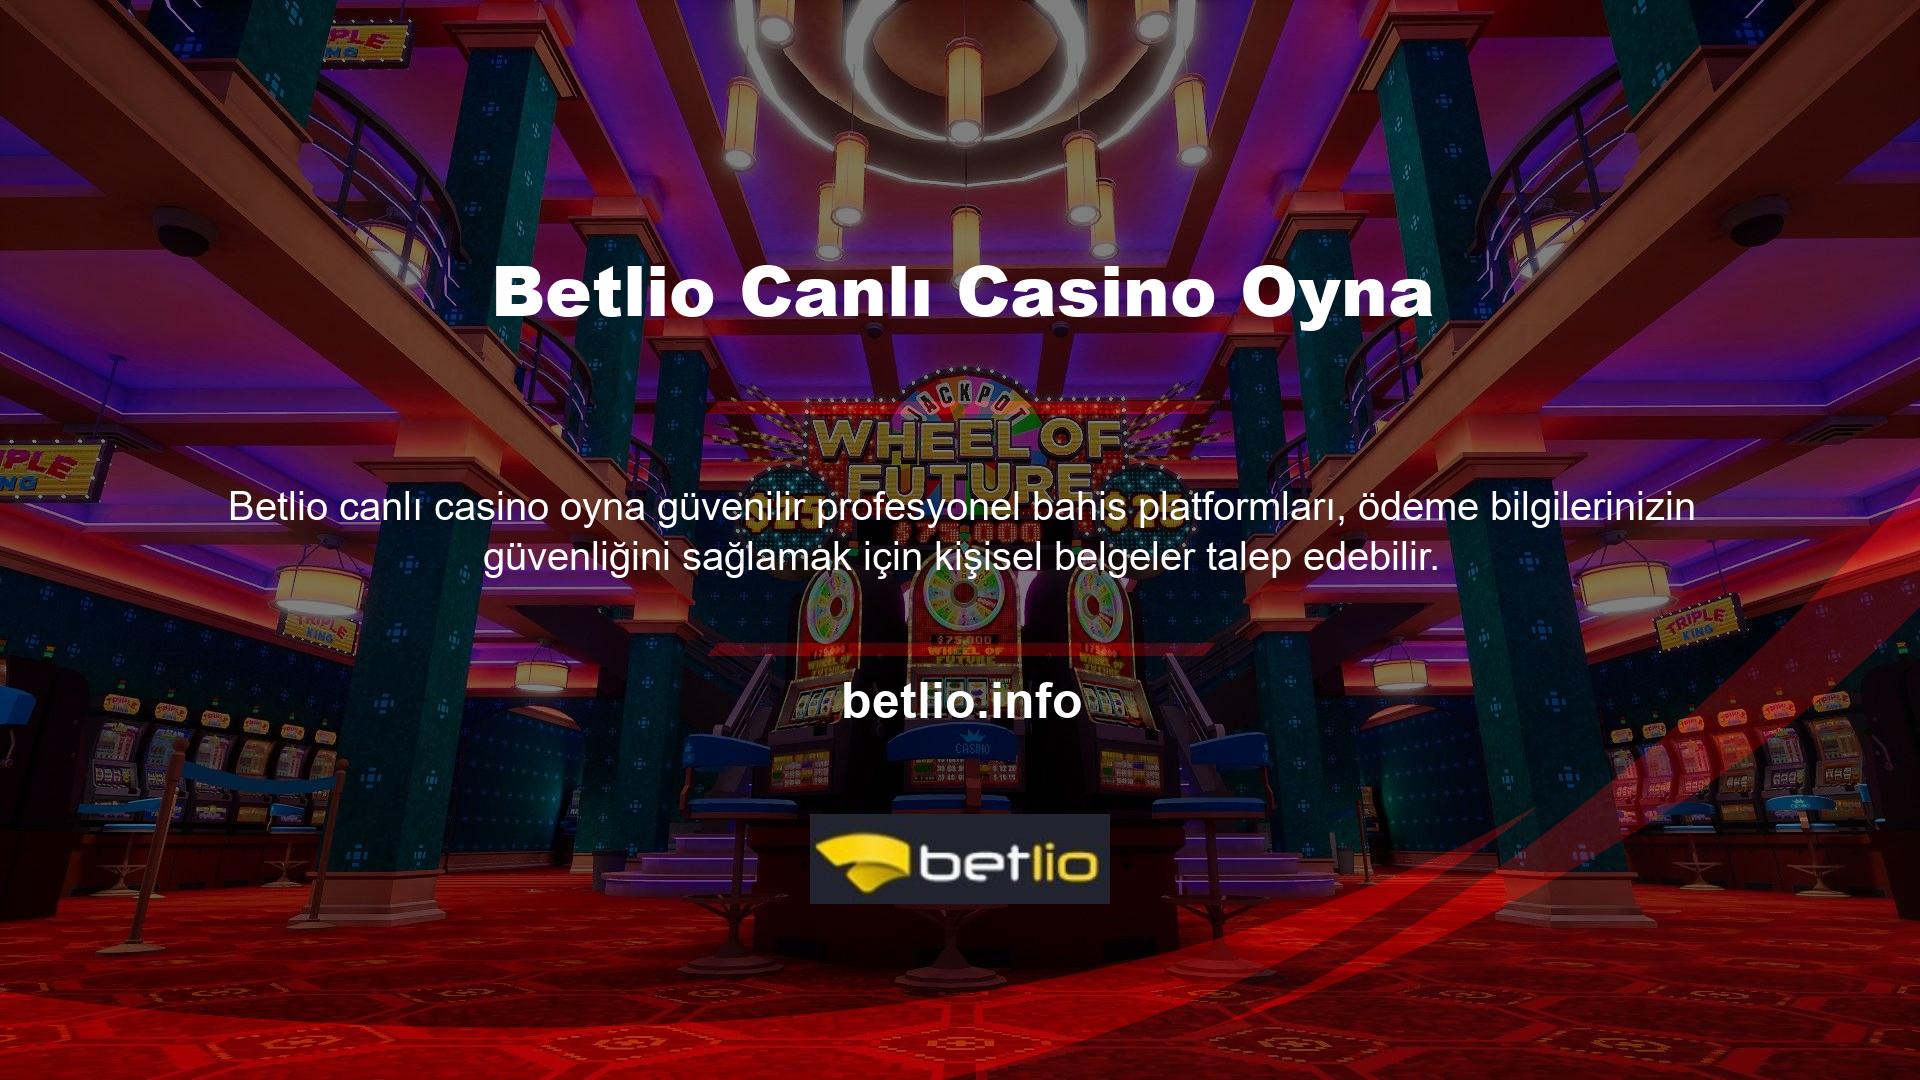 Çevrimiçi Casino platformu, kullanıcı dosyalarının iletildikten sonra güvenliğini garanti ediyor mu? Bu durumda Betlio belge güvenliğini garanti eder, dolayısıyla paniğe gerek yoktur